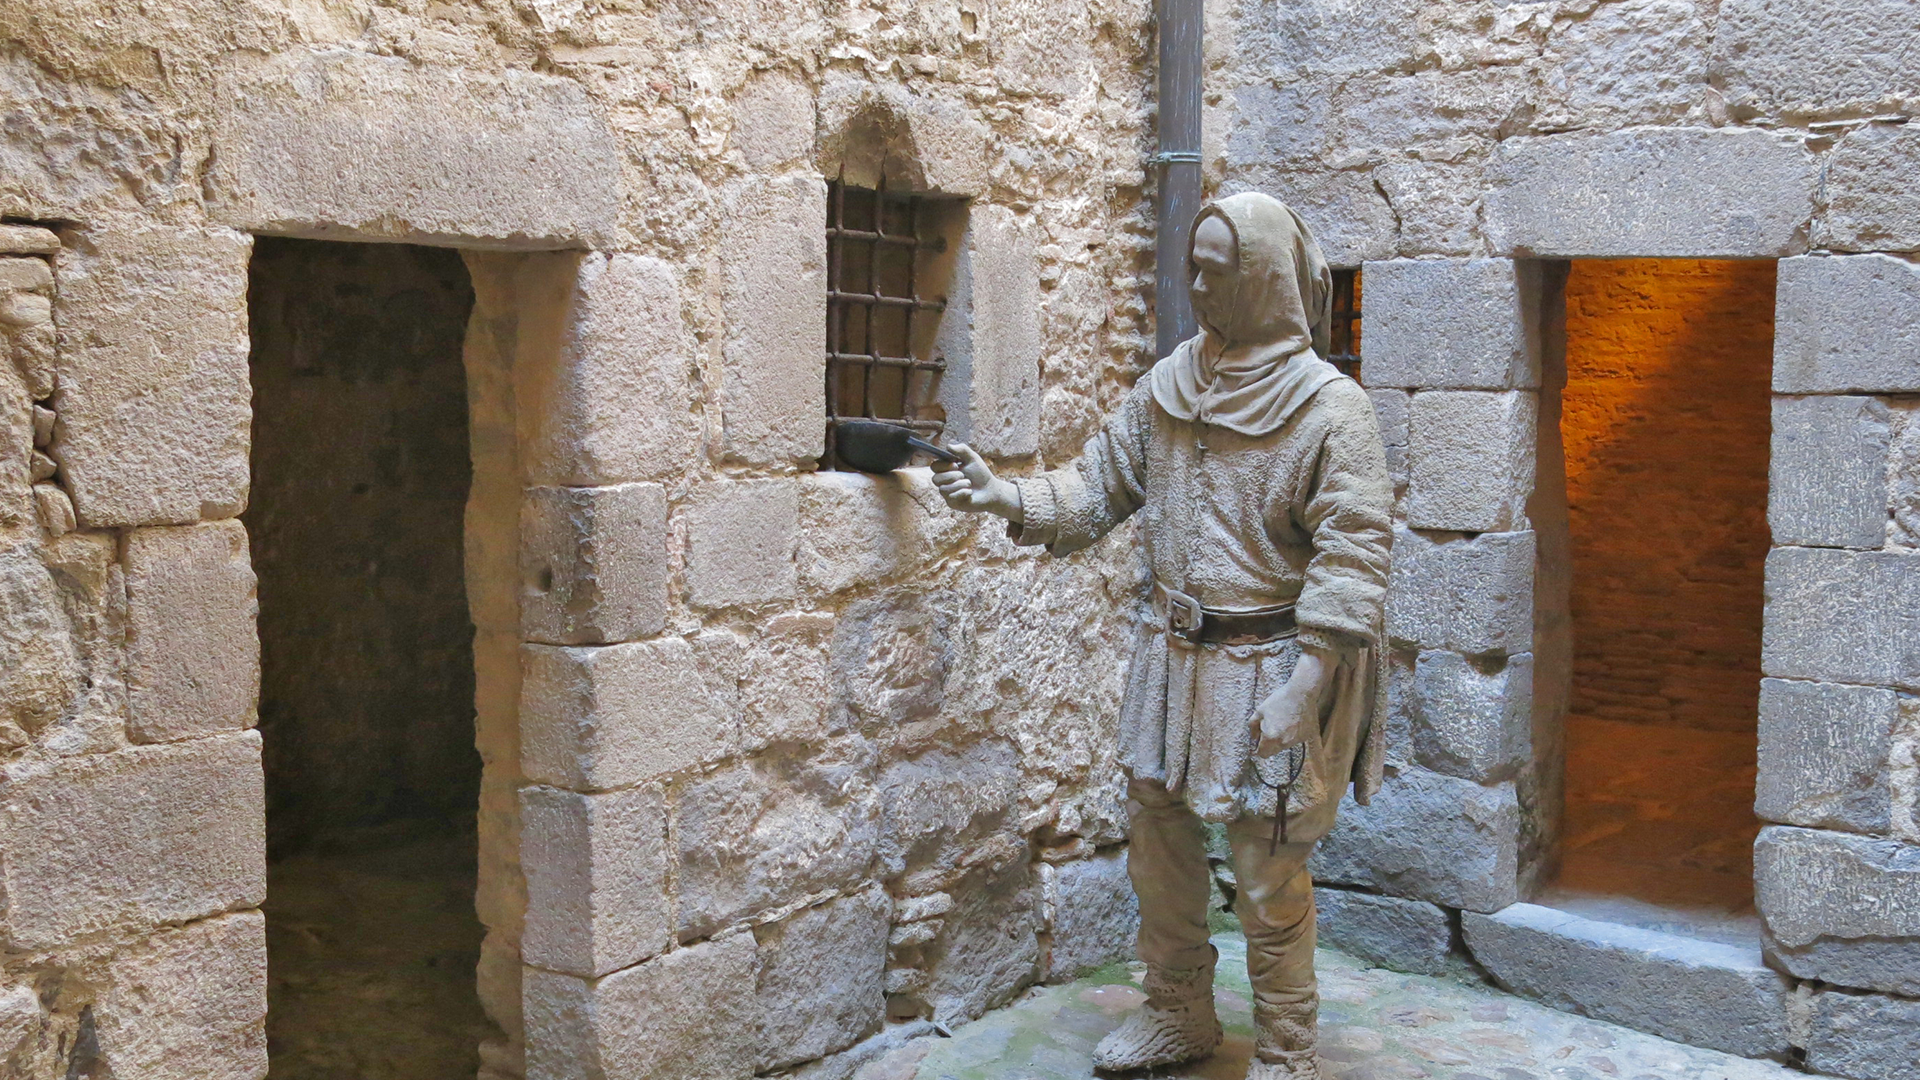 No te pierdas las inscripciones que dejaron los prisioneros de esta cárcel medieval de Catalunya